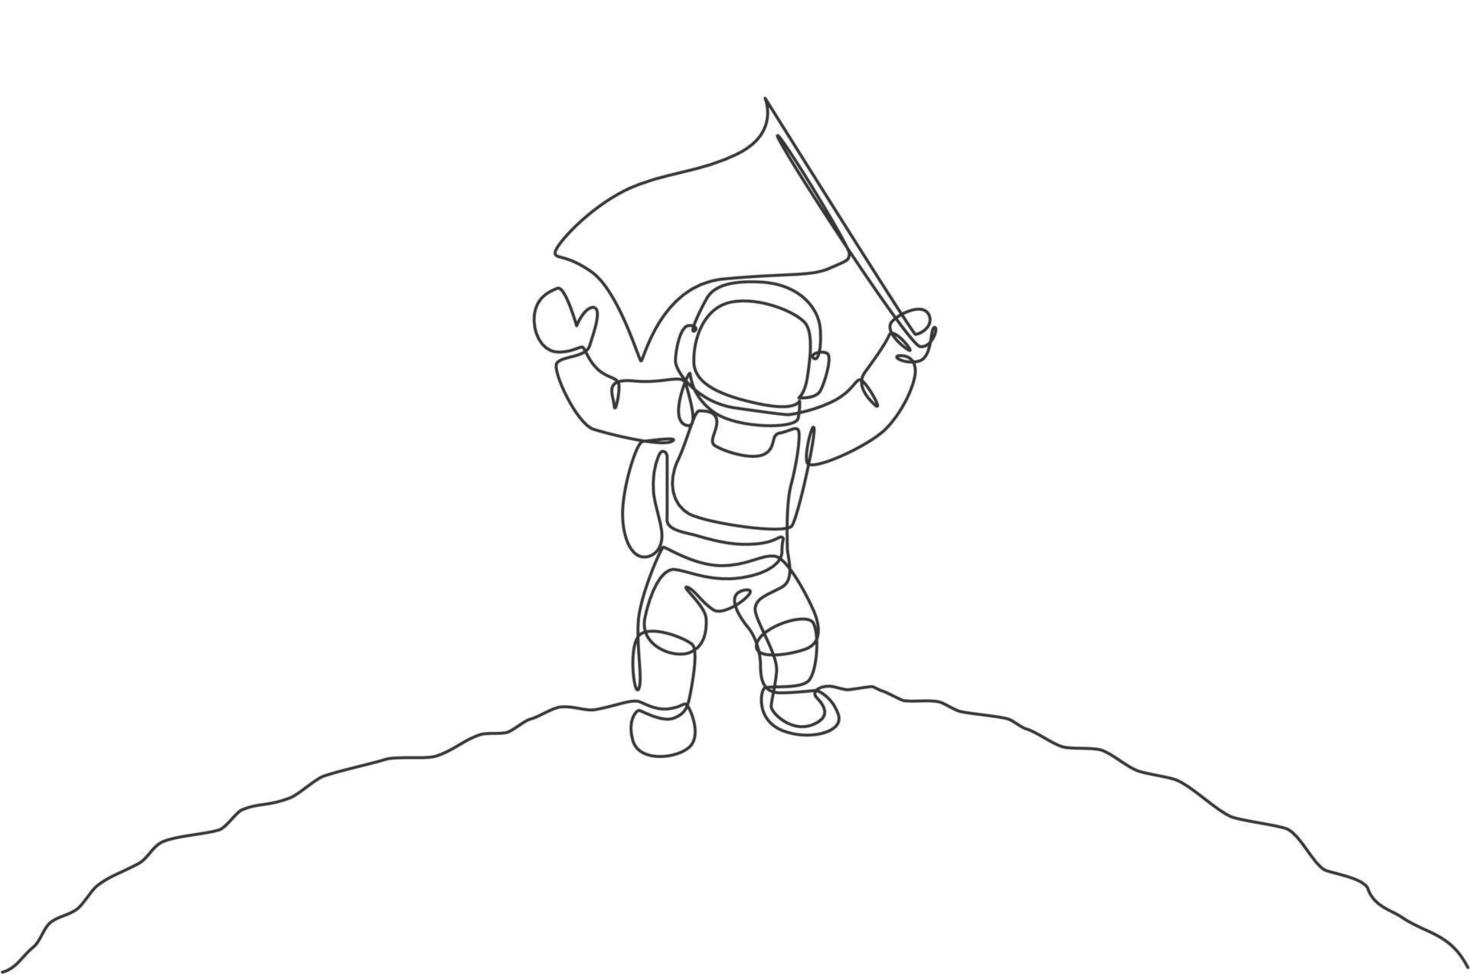 enkele doorlopende lijntekening wetenschapsastronaut in maanoppervlak zwaaiende vlag om de landing te vieren. fantasie diepe ruimteverkenning, fictieconcept. een lijn tekenen ontwerp vector illustratie afbeelding